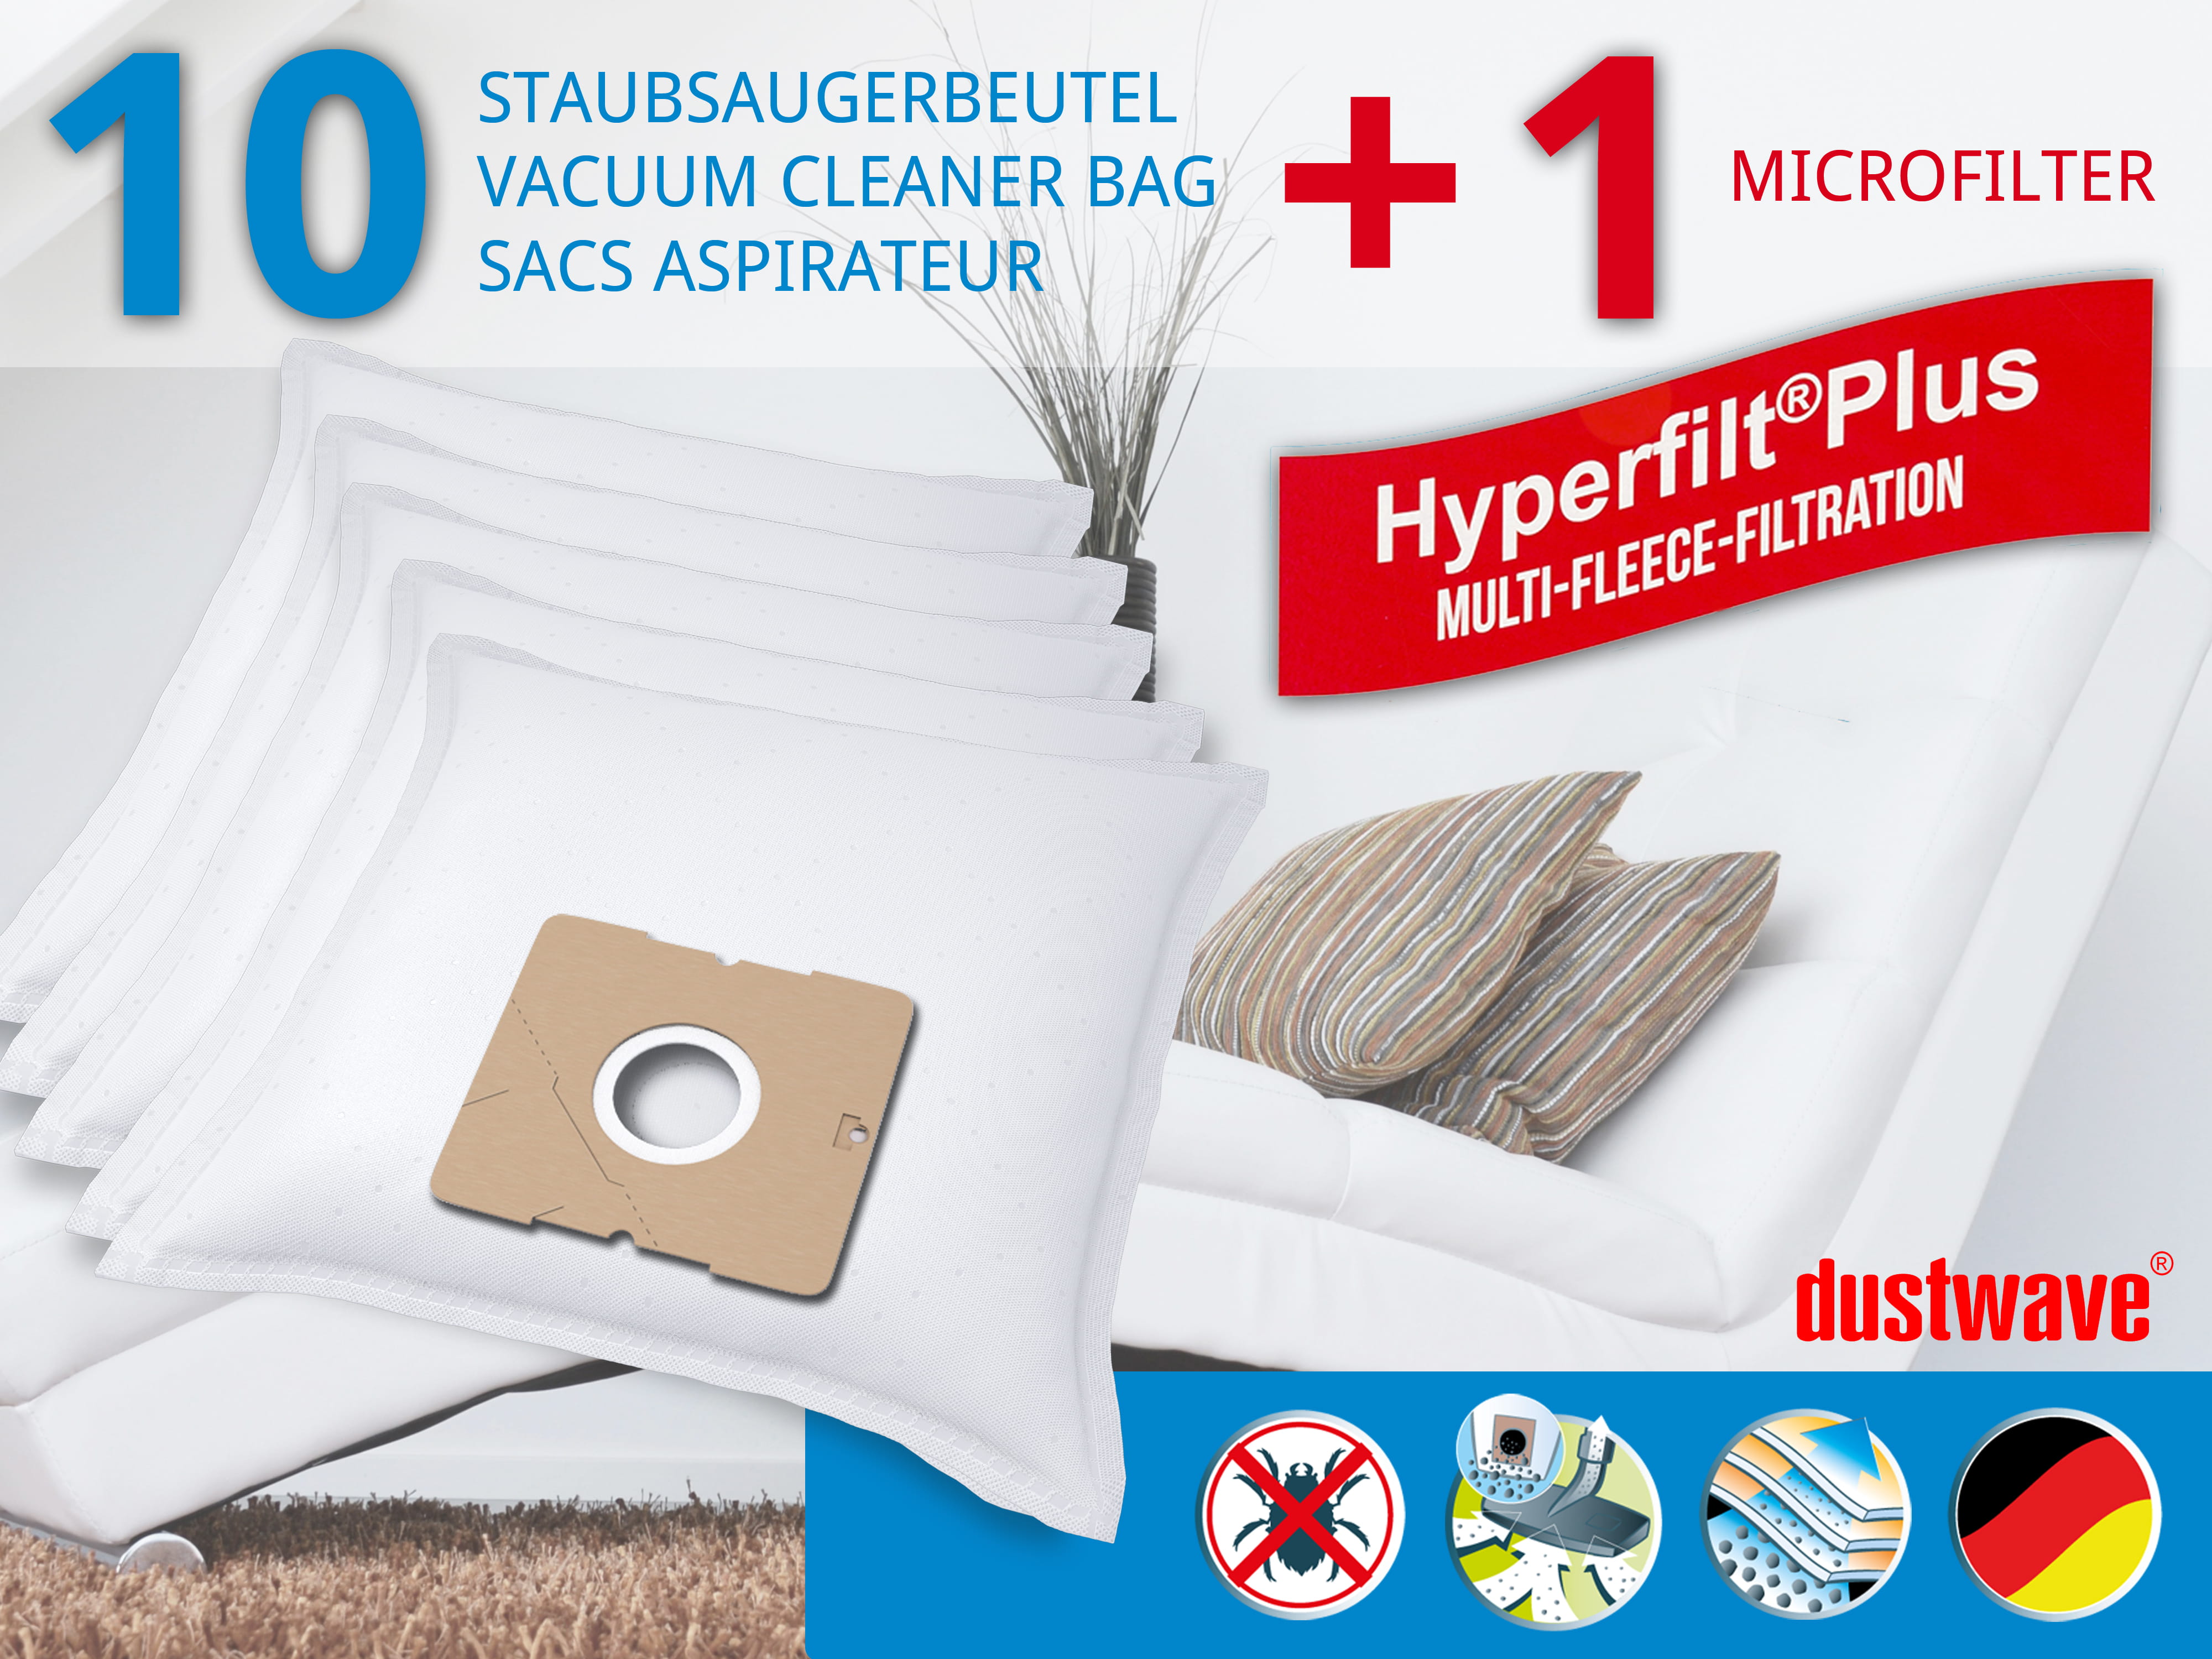 Dustwave® 10 Staubsaugerbeutel für Bravo B 4521 Mouse - hocheffizient, mehrlagiges Mikrovlies mit Hygieneverschluss - Made in Germany